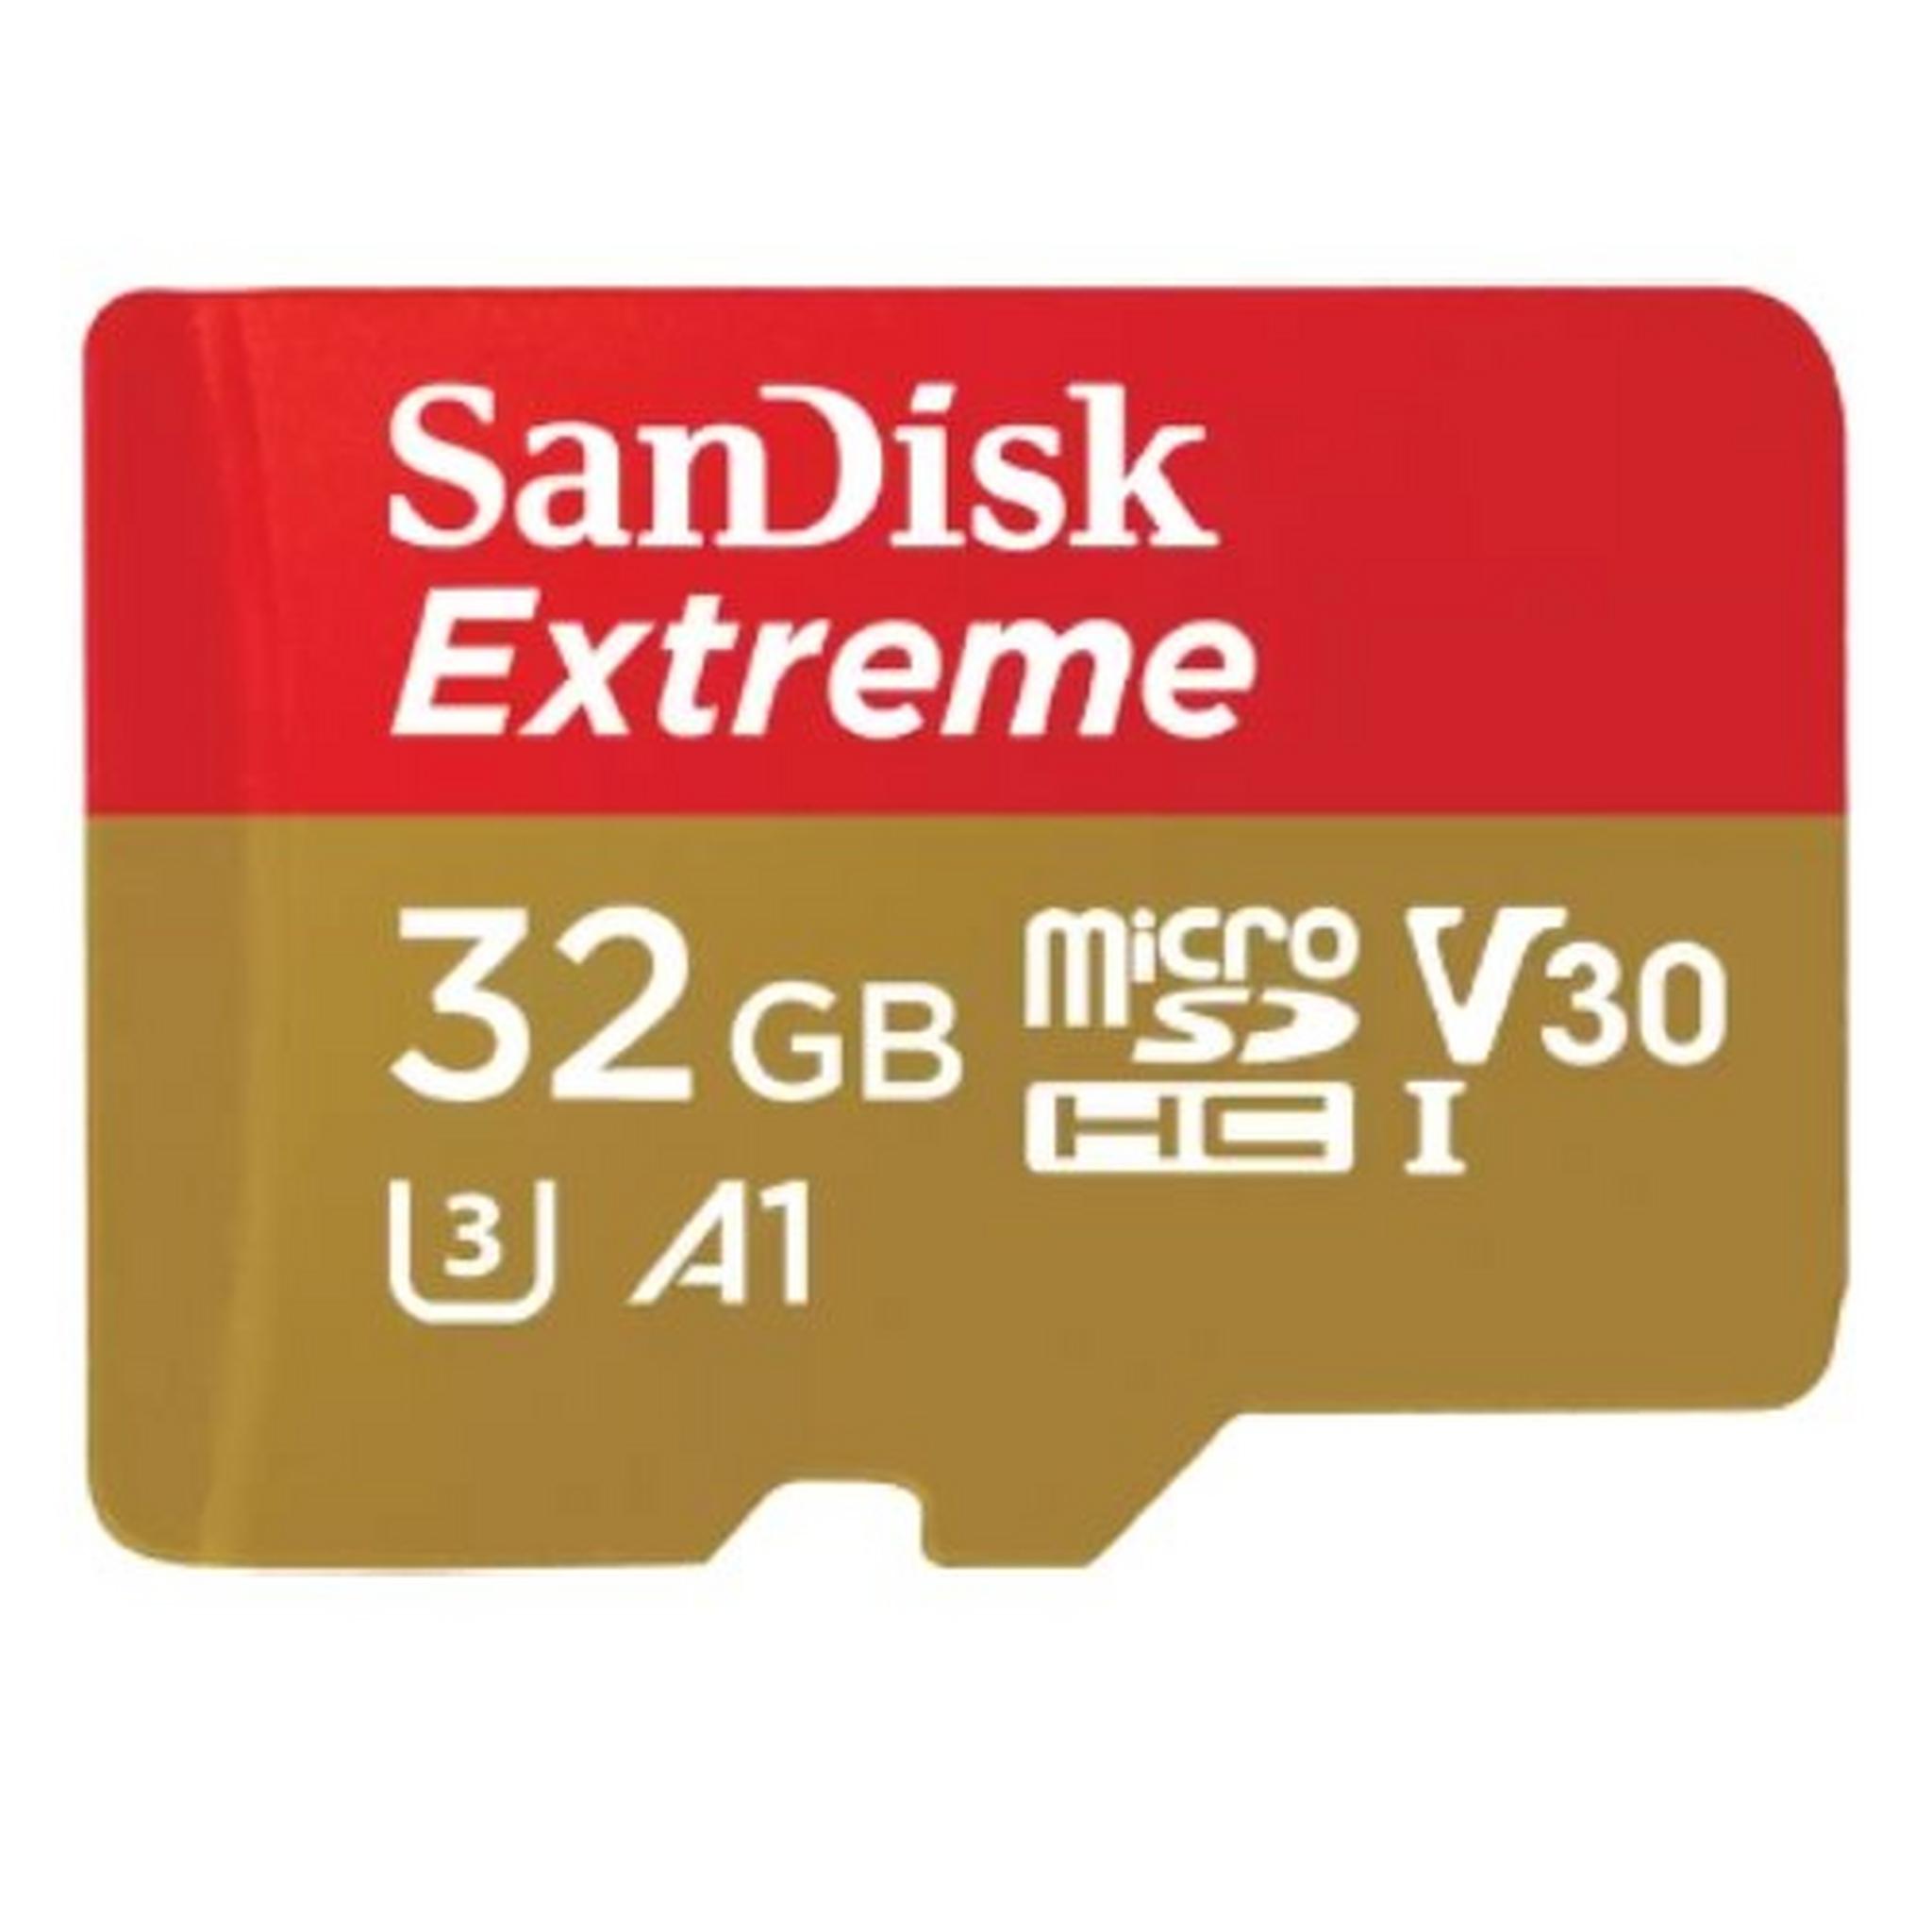 بطاقة الذاكرة سانديسك إكستريم ميكرو إس دي بسعة 32 جيجابايت لألعاب الهاتف